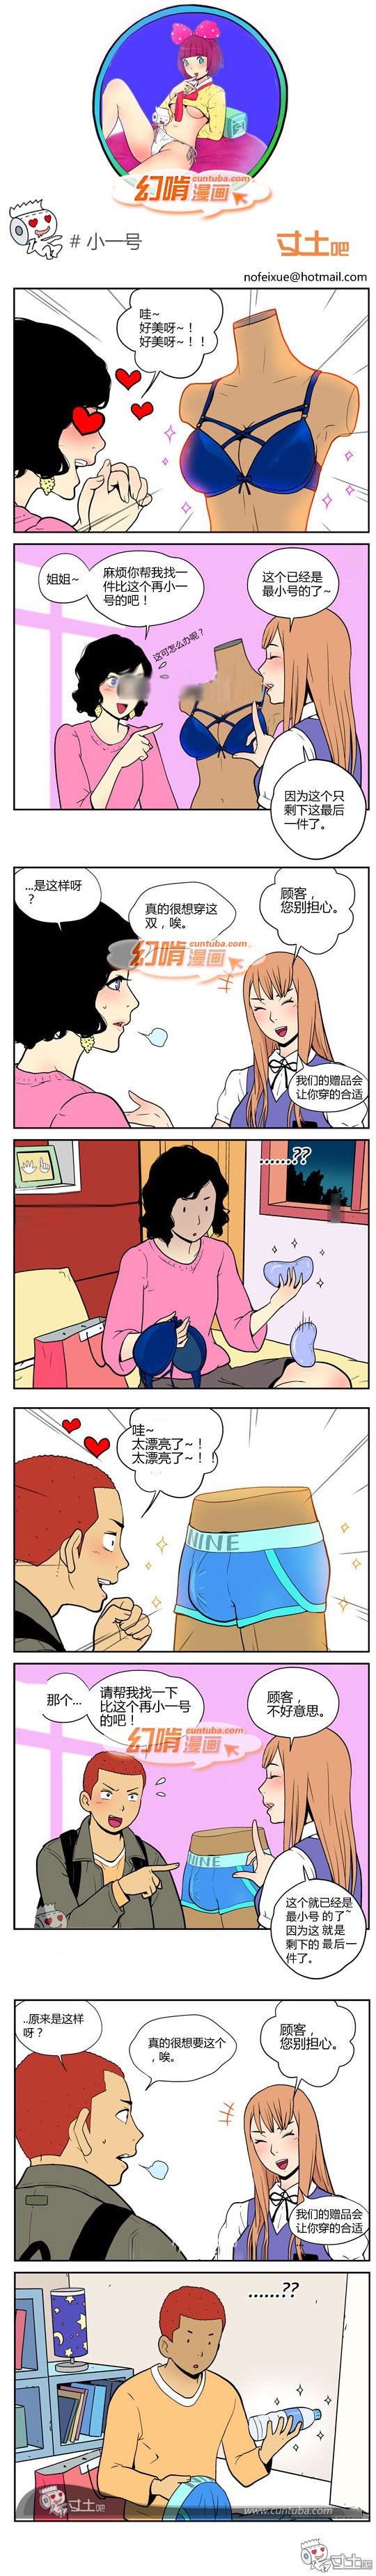 幻啃漫画小一号